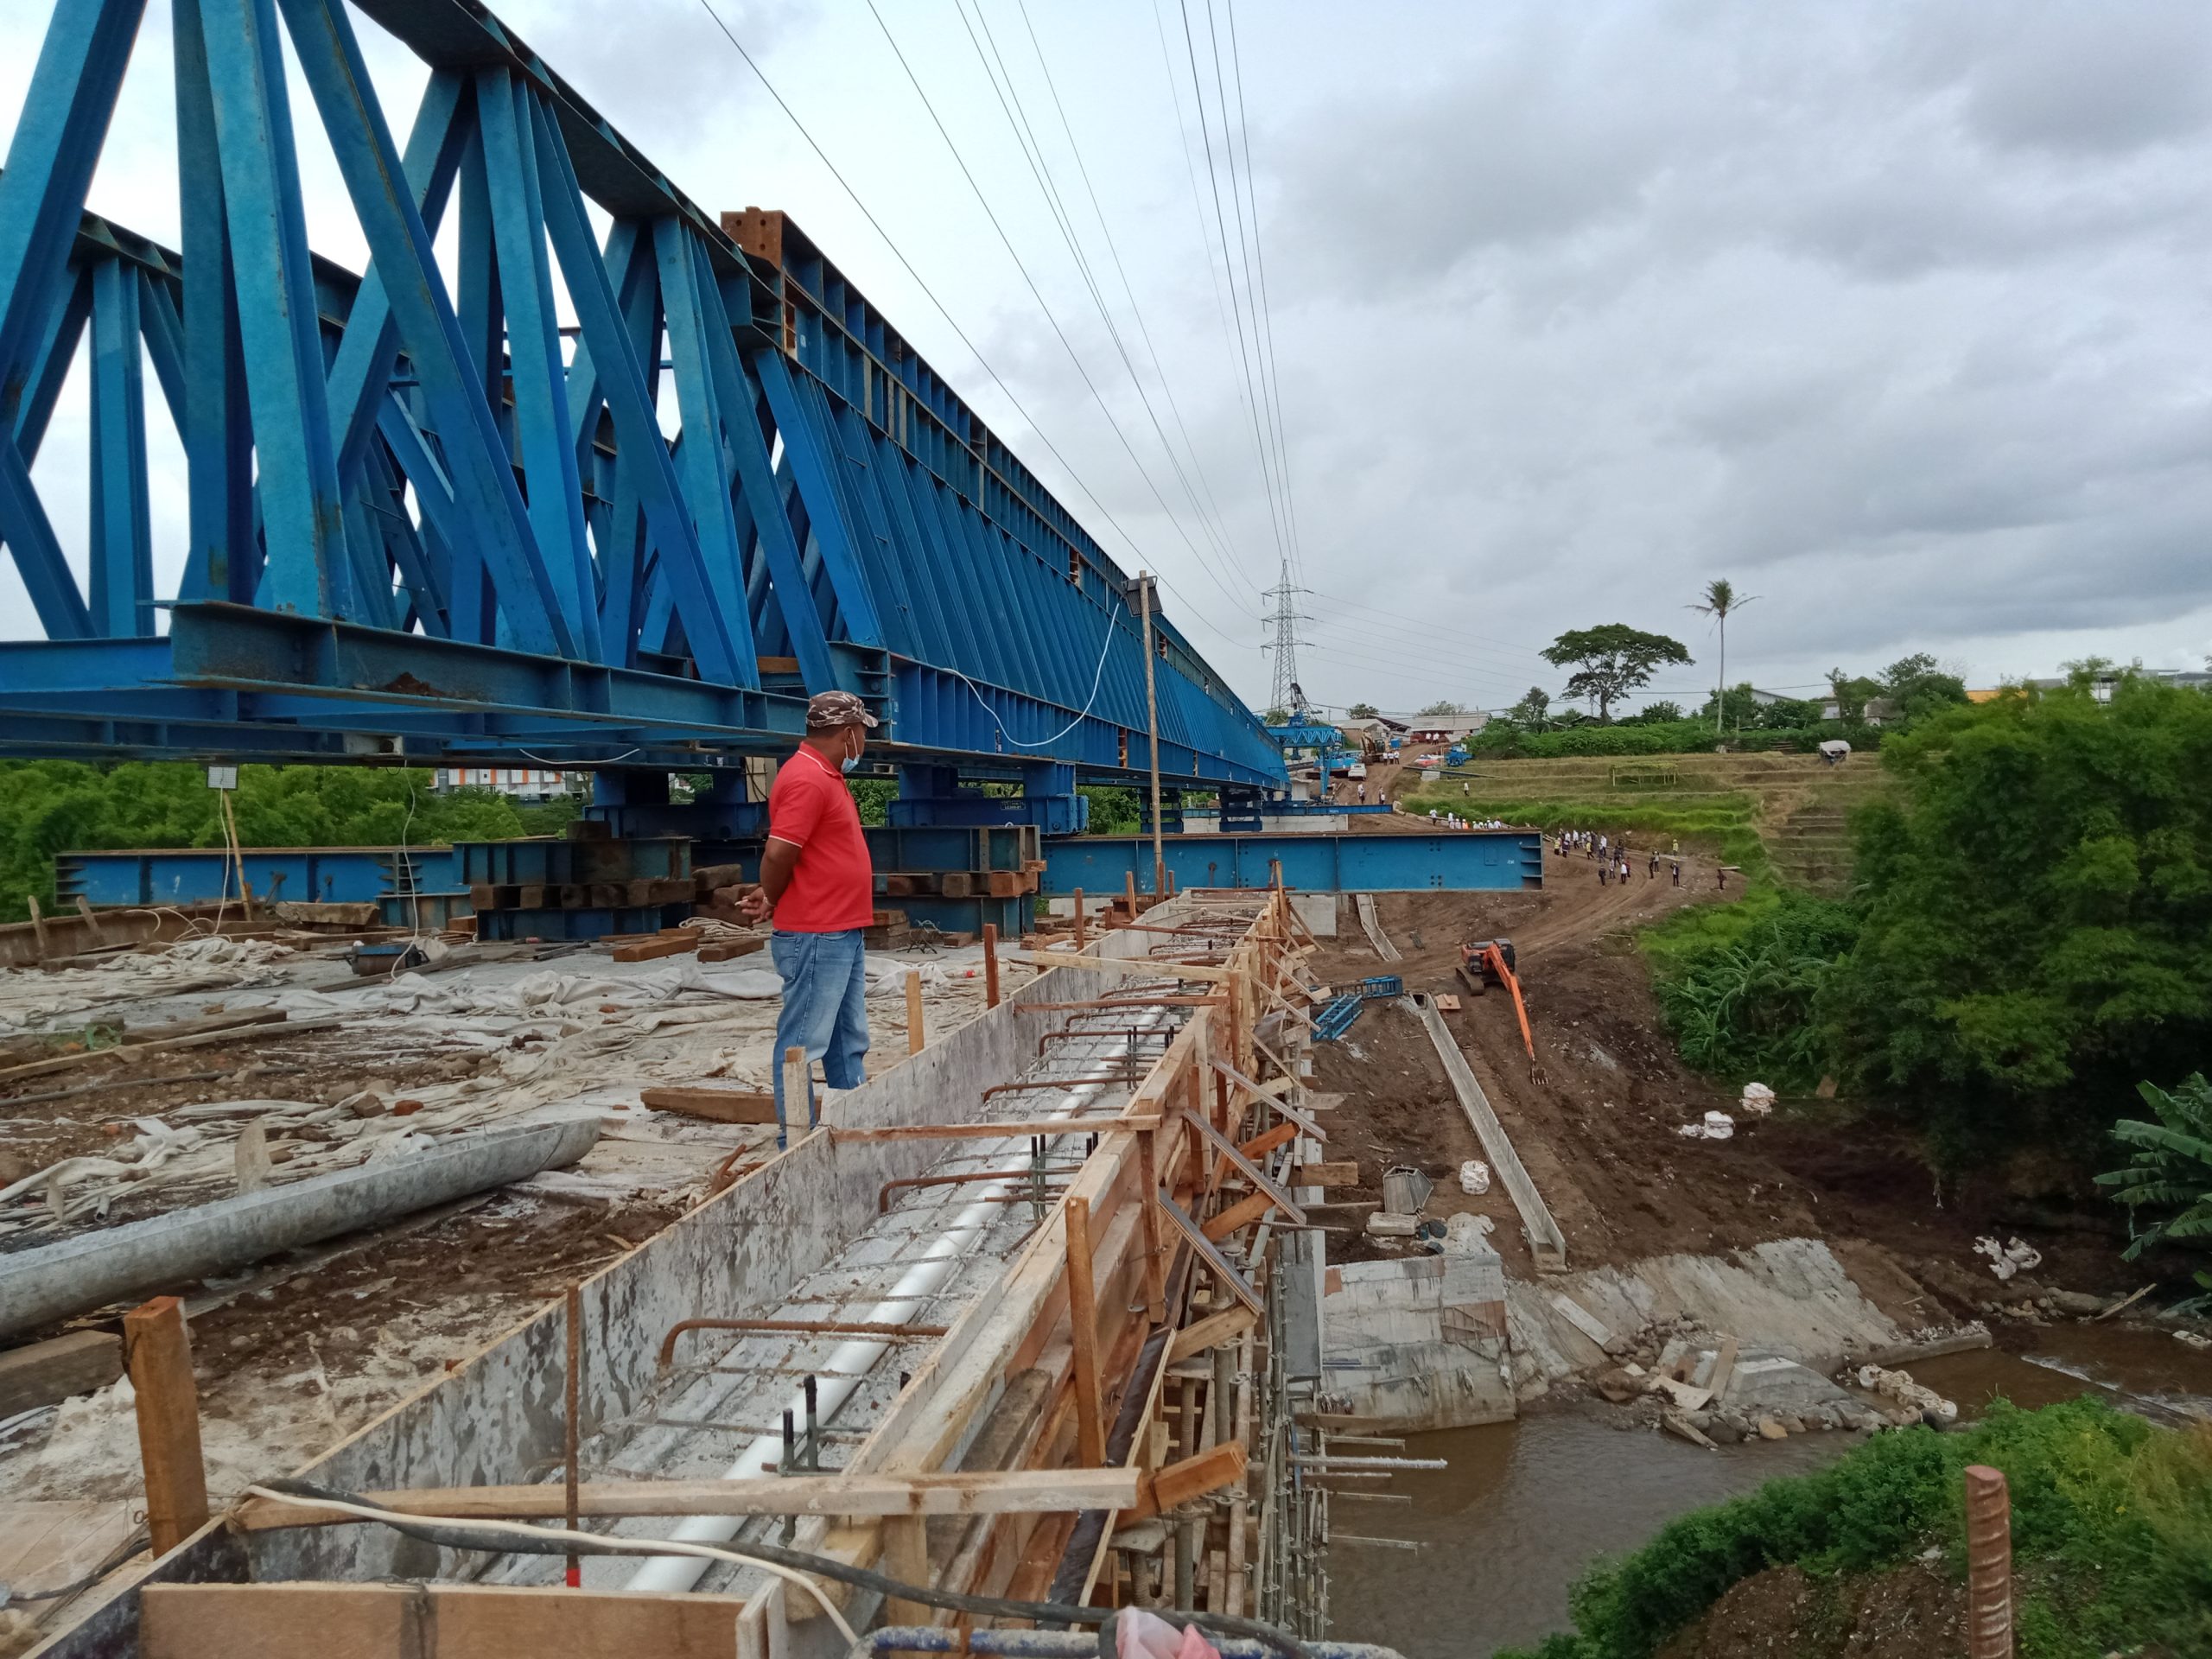 Pantau Perkembangan Proyek Infrastruktur di Kota Malang Lewat Aplikasi ‘Si Cakep’